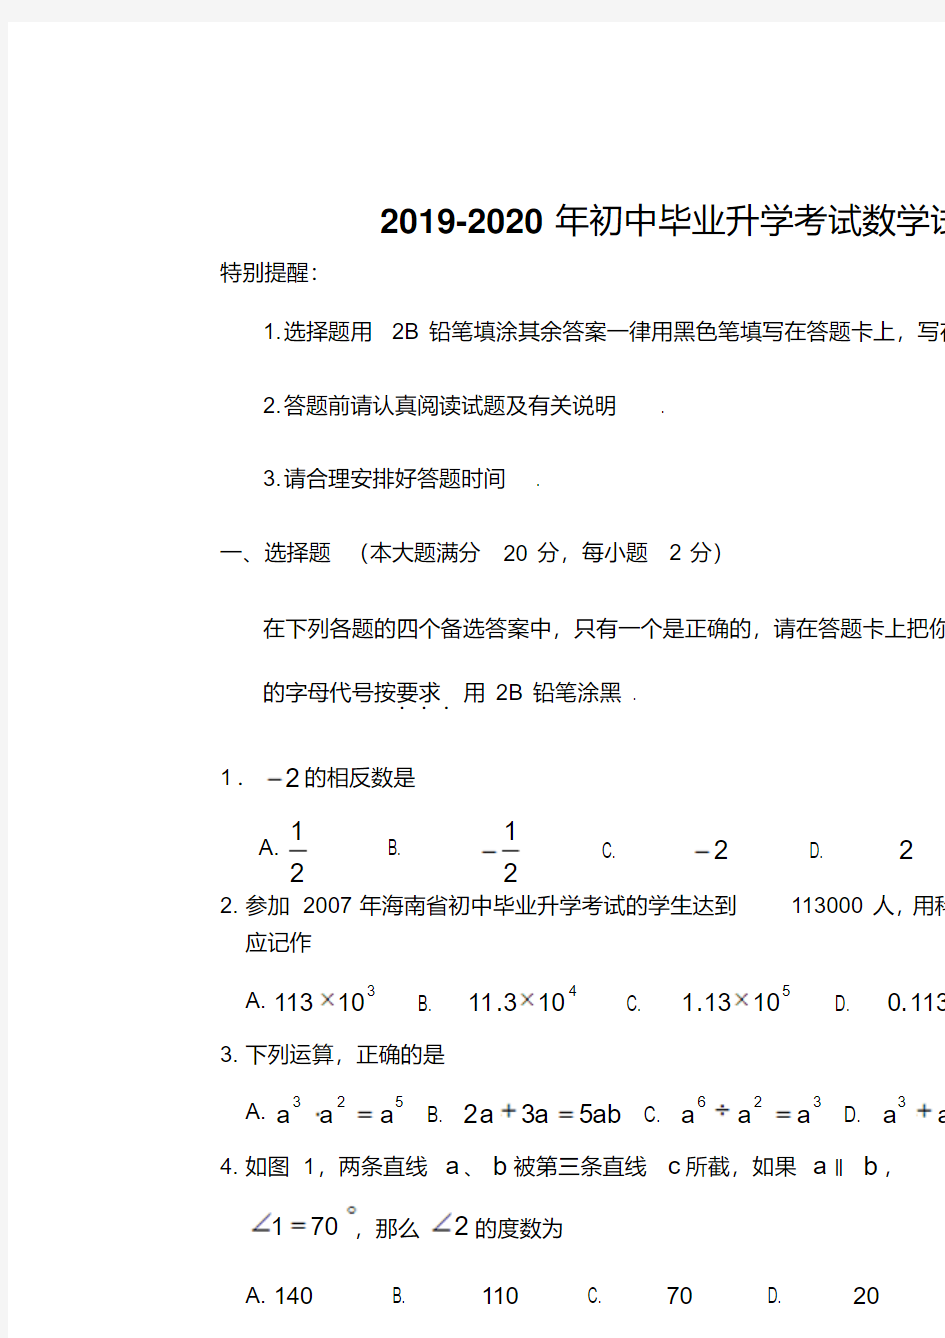 2019-2020年初中毕业升学考试数学试题